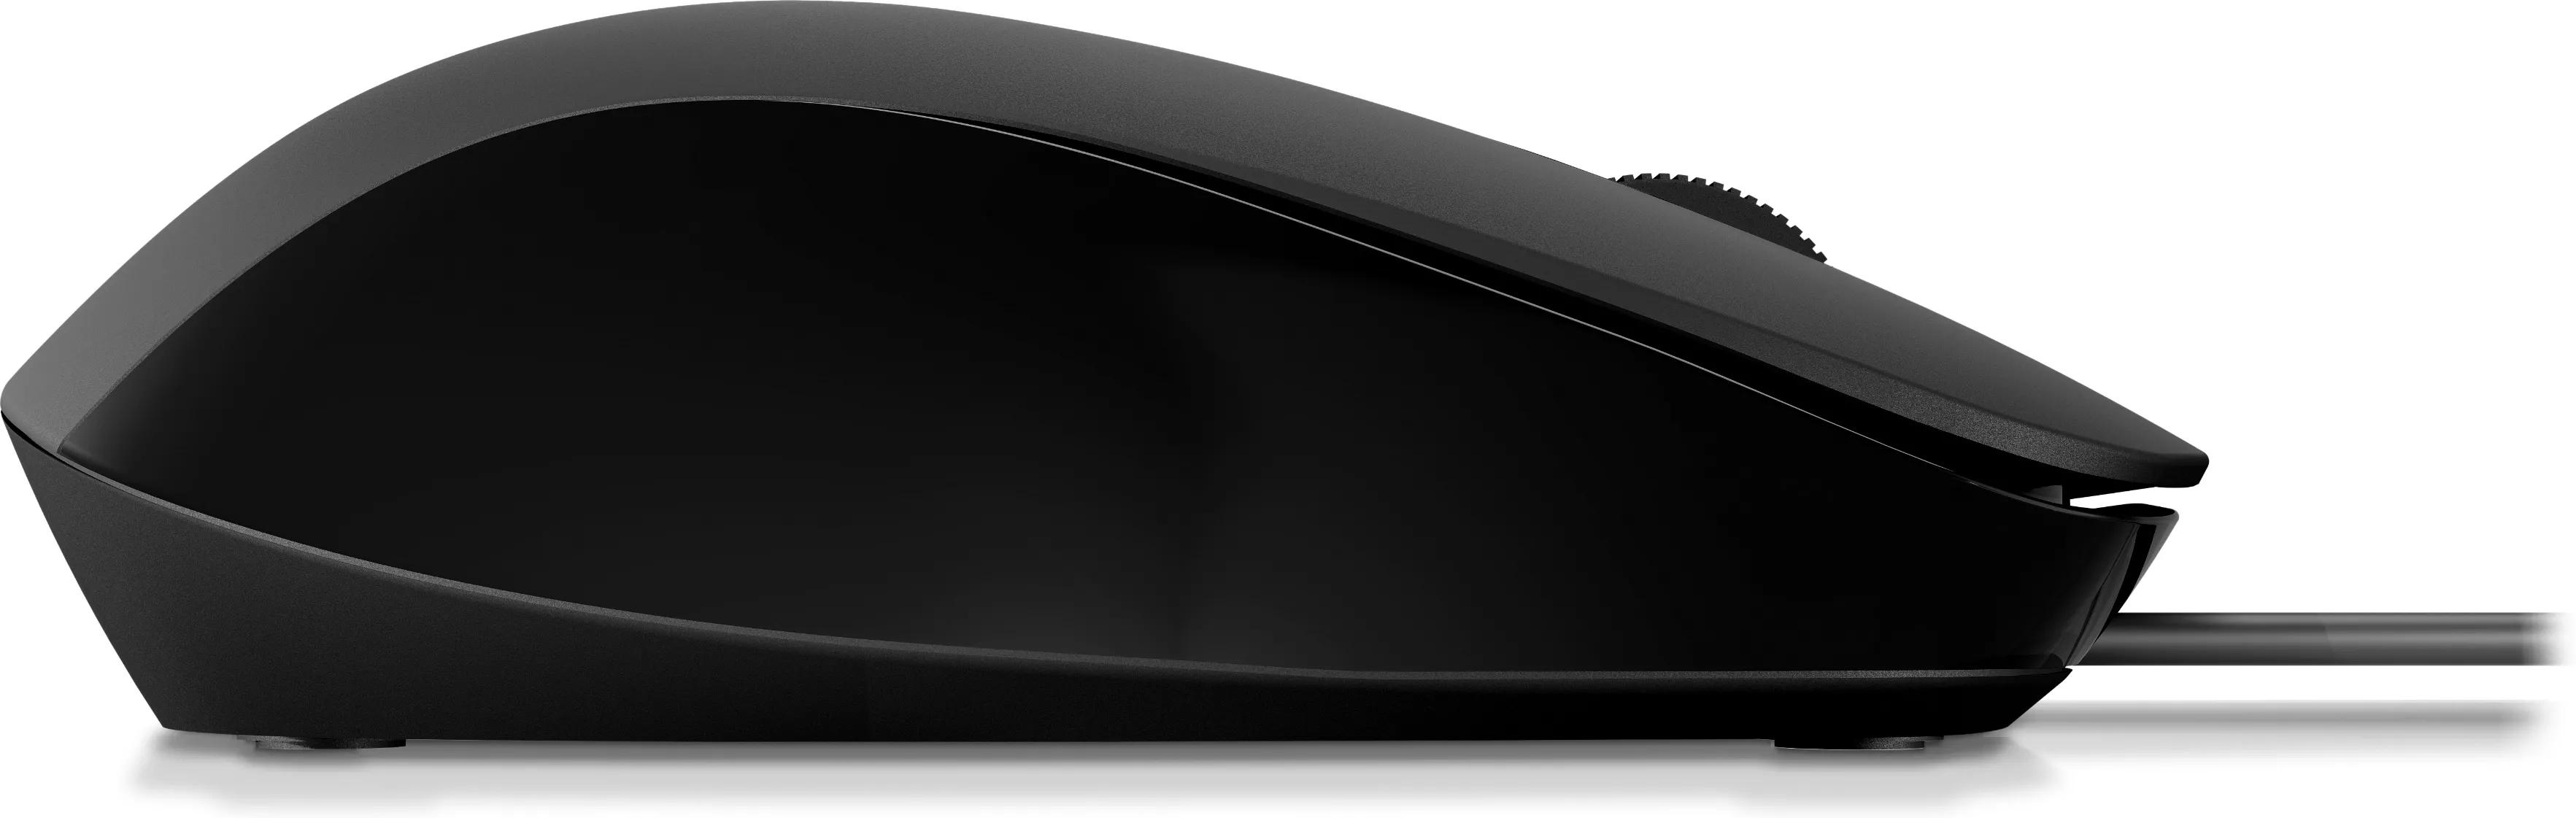 Vente HP 150 Wired Mouse HP au meilleur prix - visuel 4